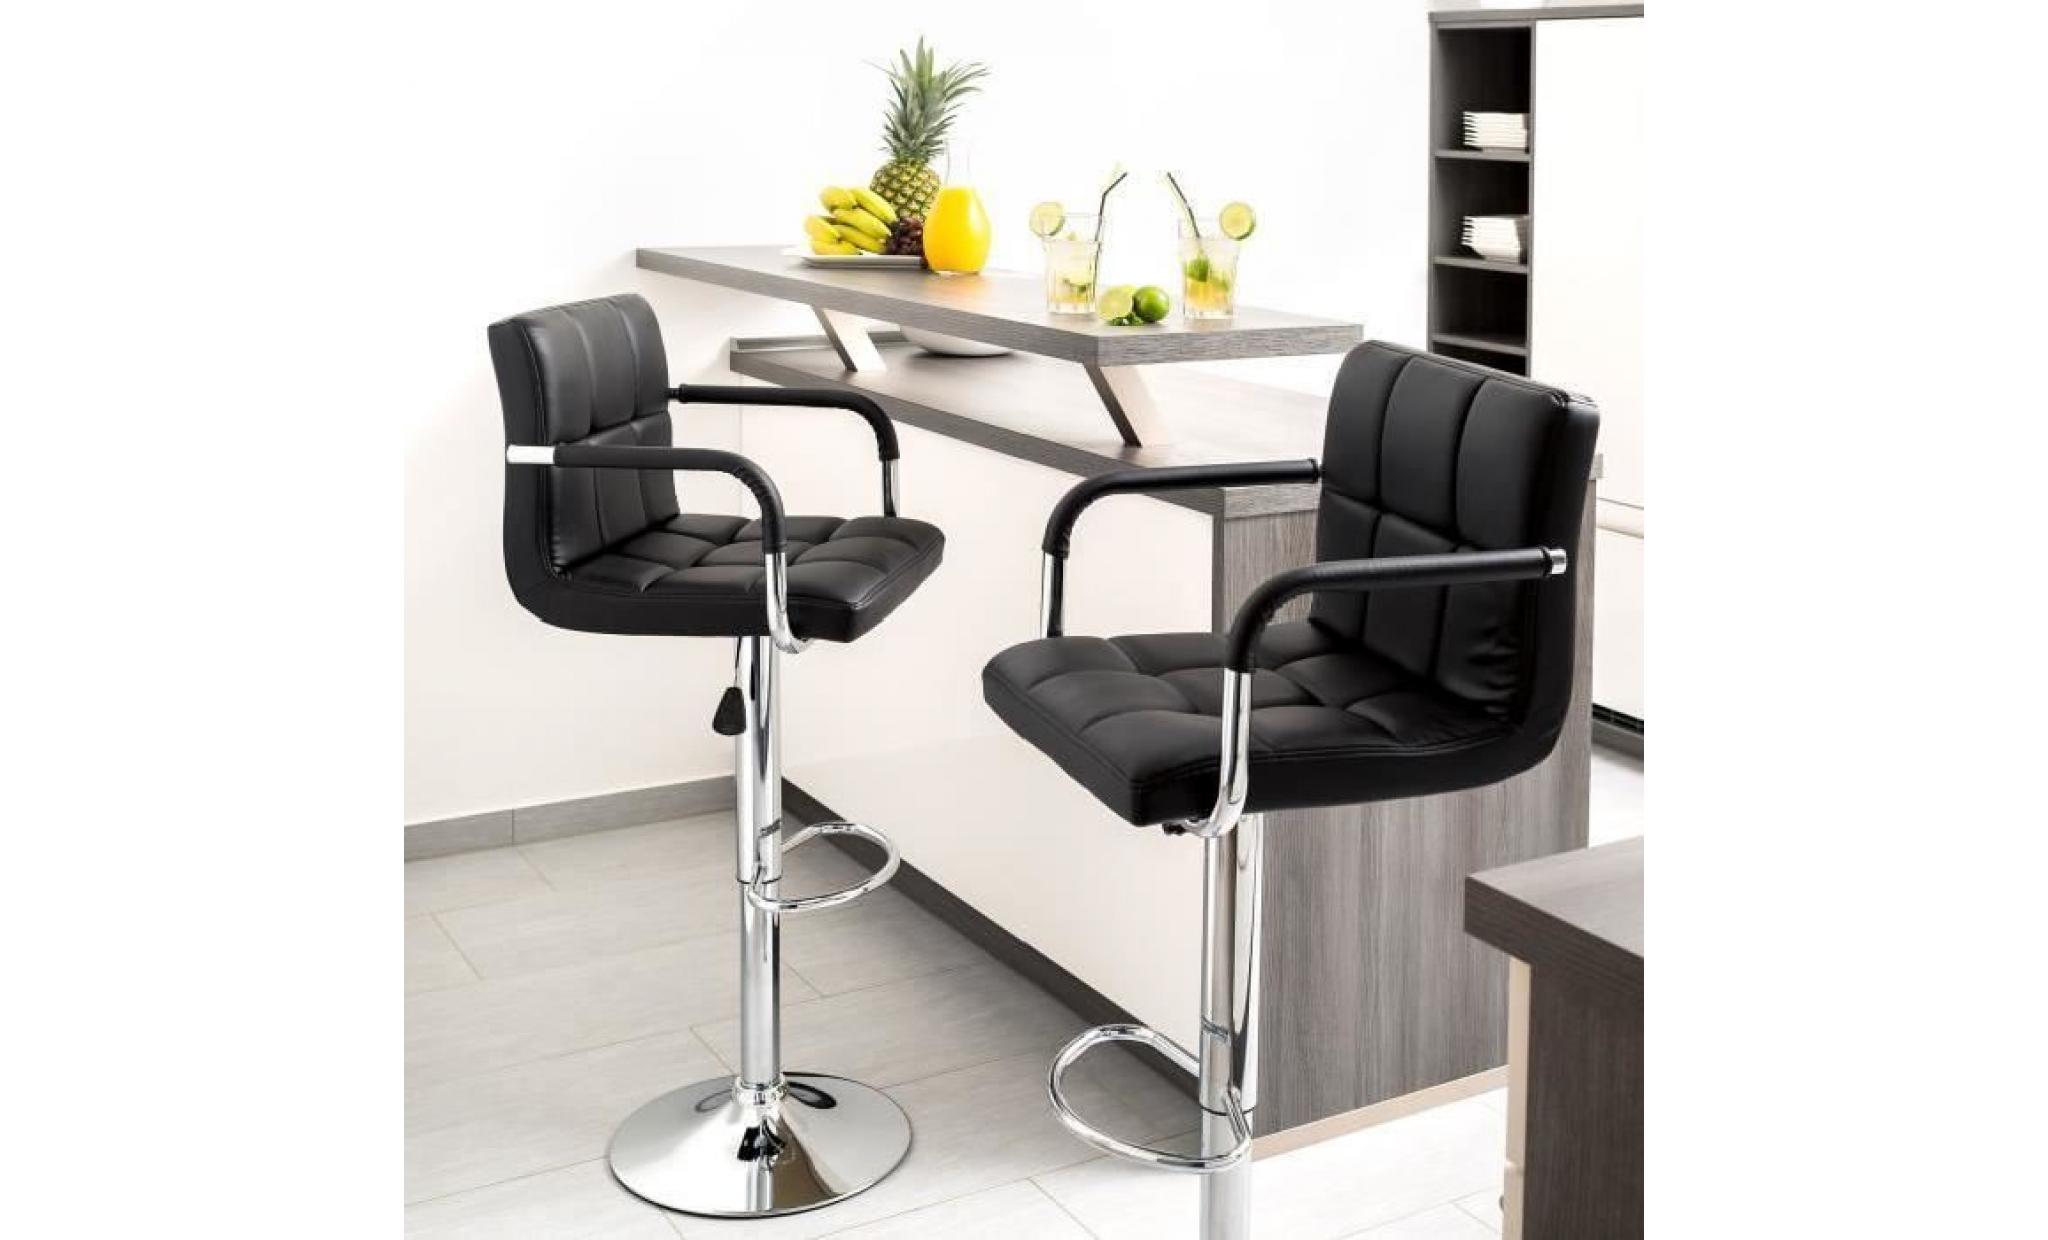 2x tabourets de bar haut chaise de bar pu chrome hauteur réglable grande base noir